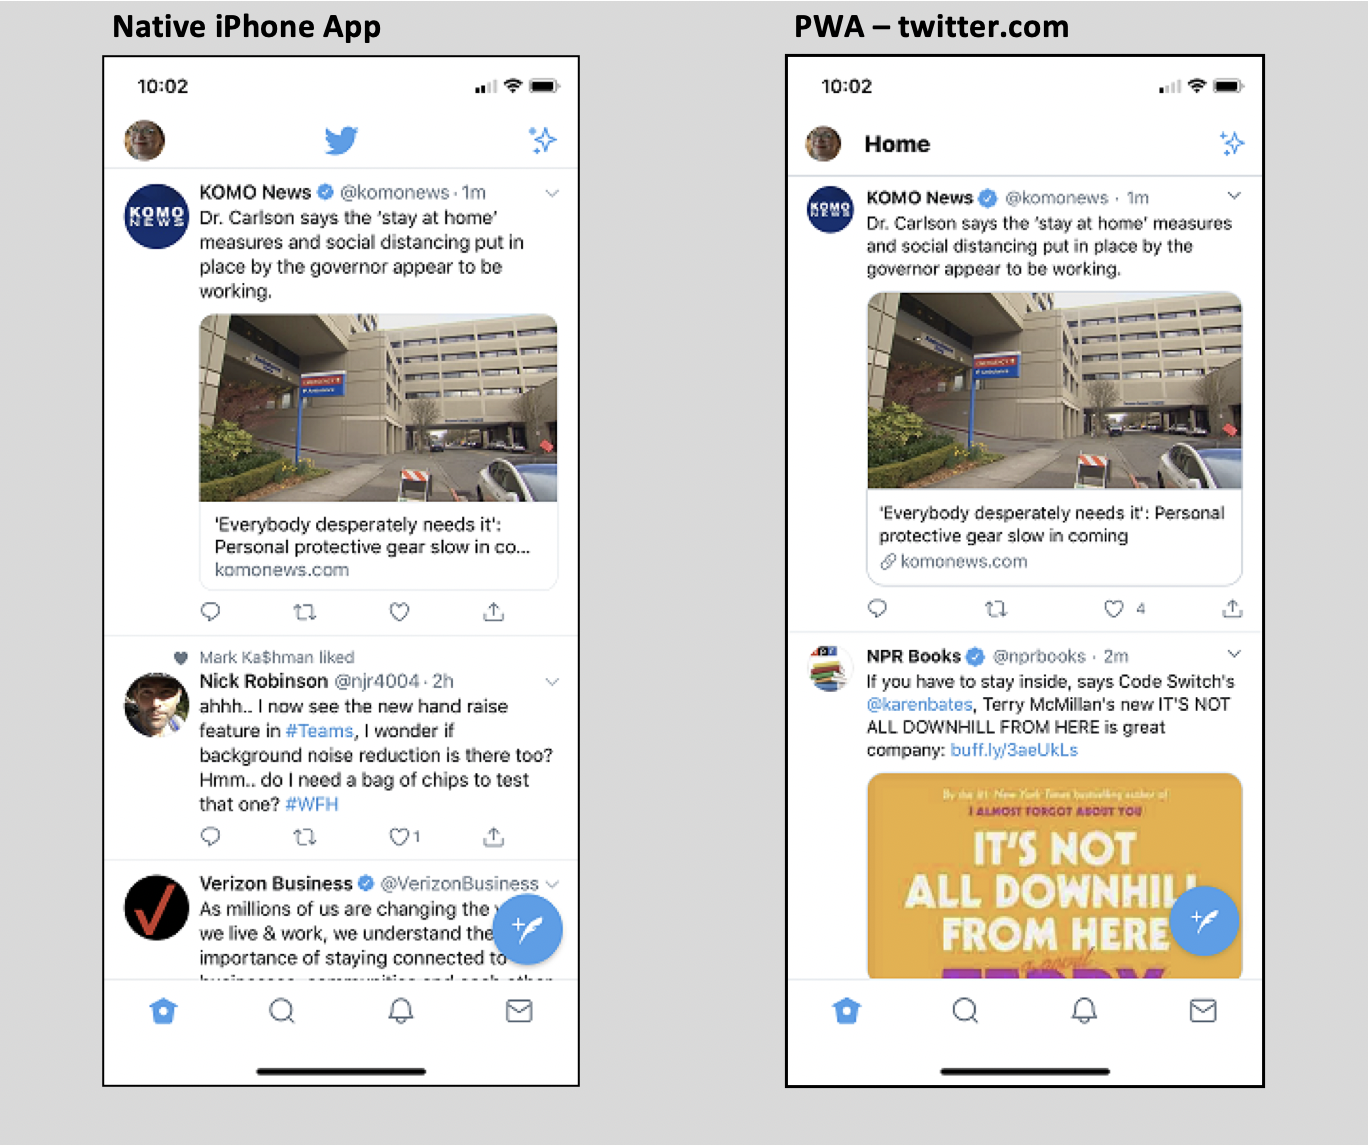 Natie iPhone App vs. PWA - Twitter.com